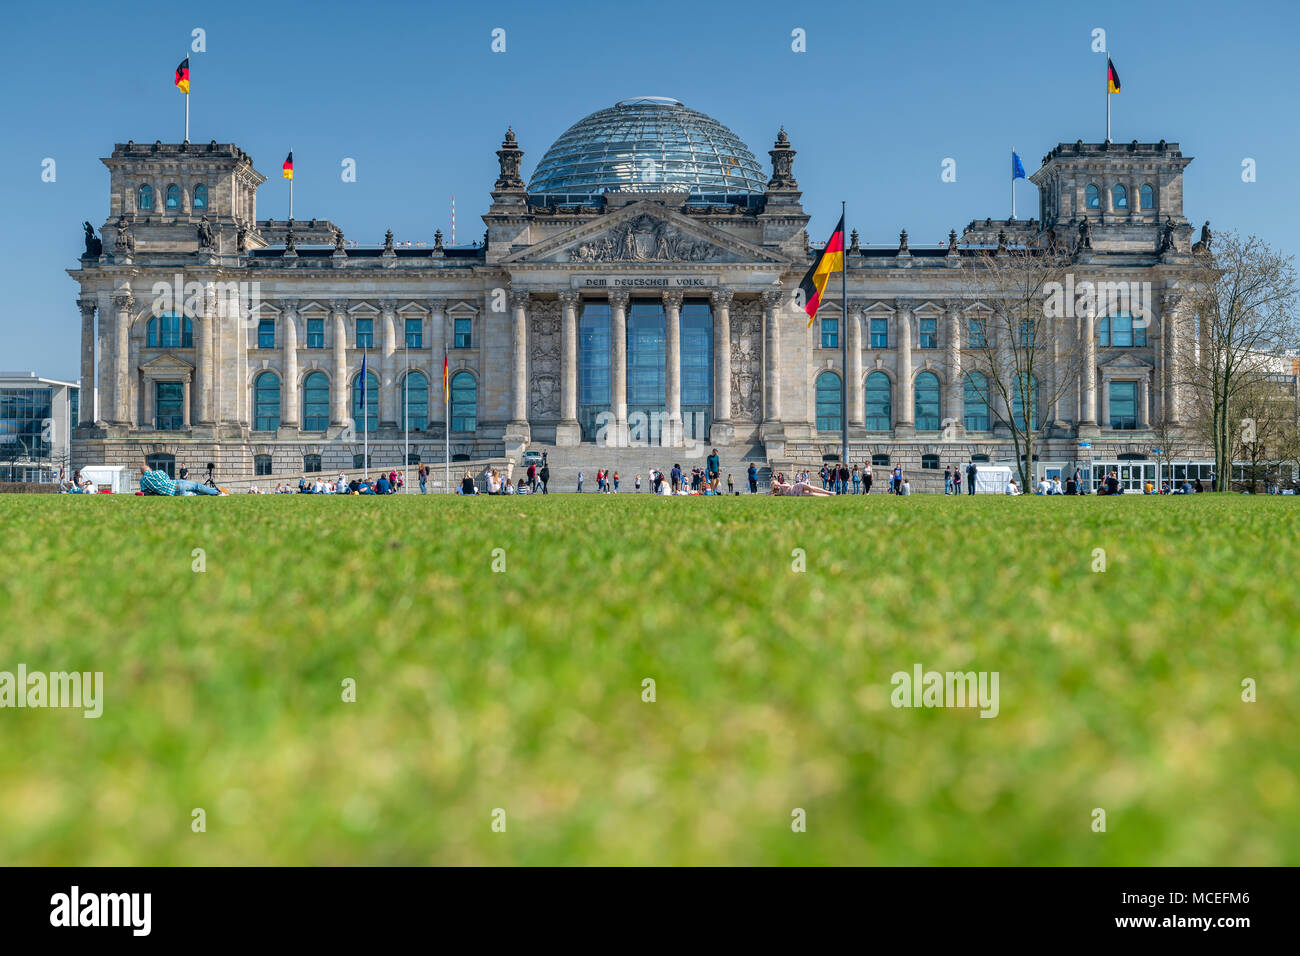 Gravement endommagé pendant la seconde guerre mondiale, le Reichstag a été entièrement restauré après la réunification de l'Allemagne et abrite aujourd'hui le Bundestag. Banque D'Images